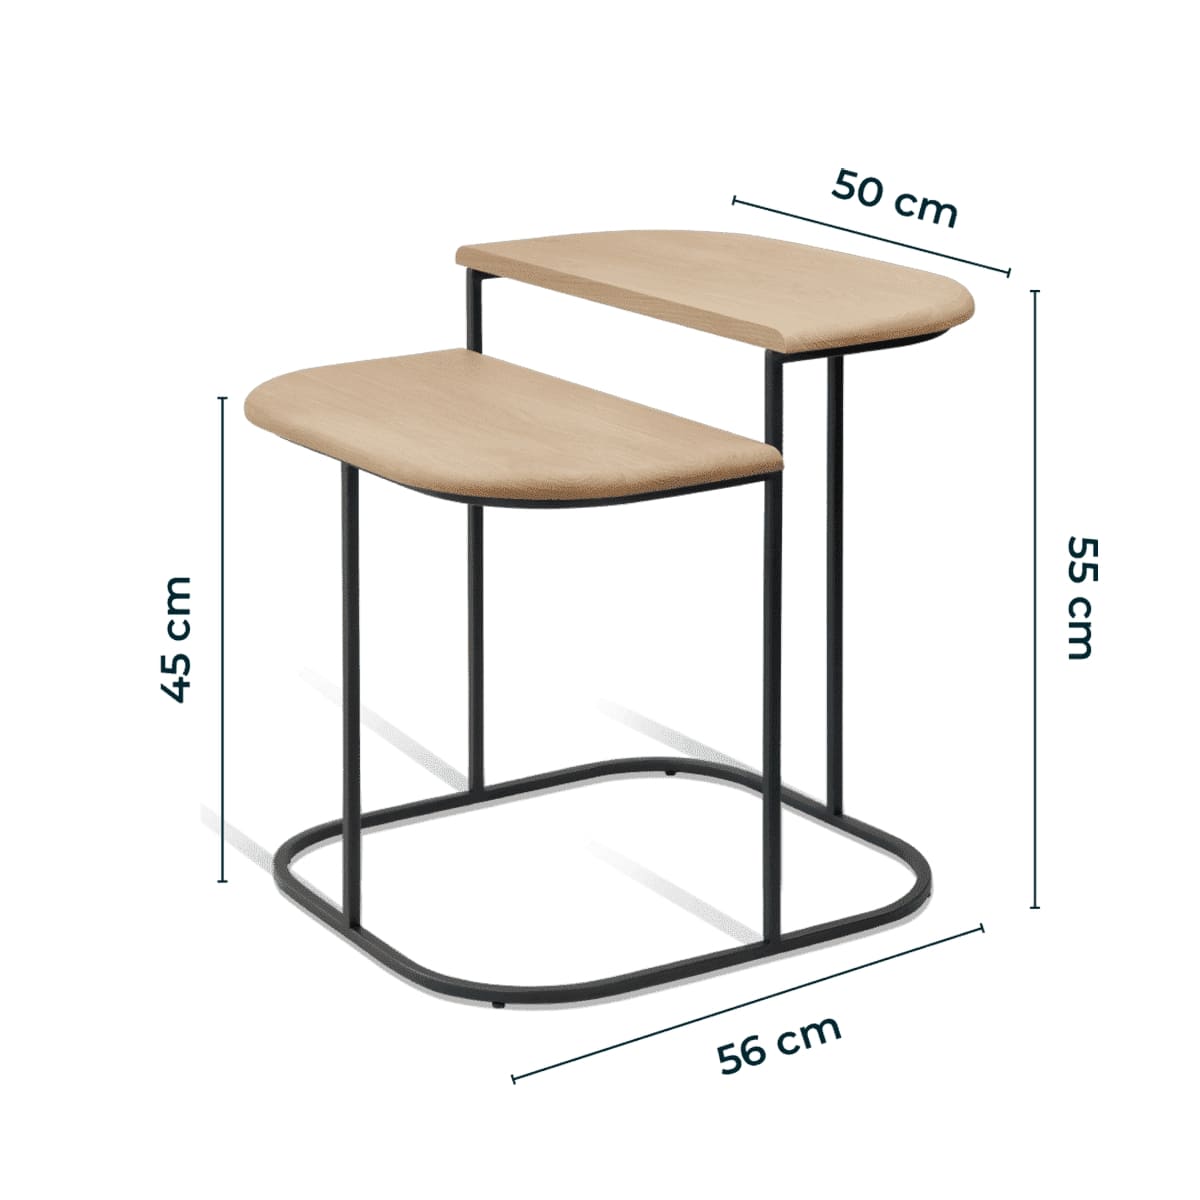 dimensions de la table basse à deux plateaux en chêne massif  fabriquée en Europe